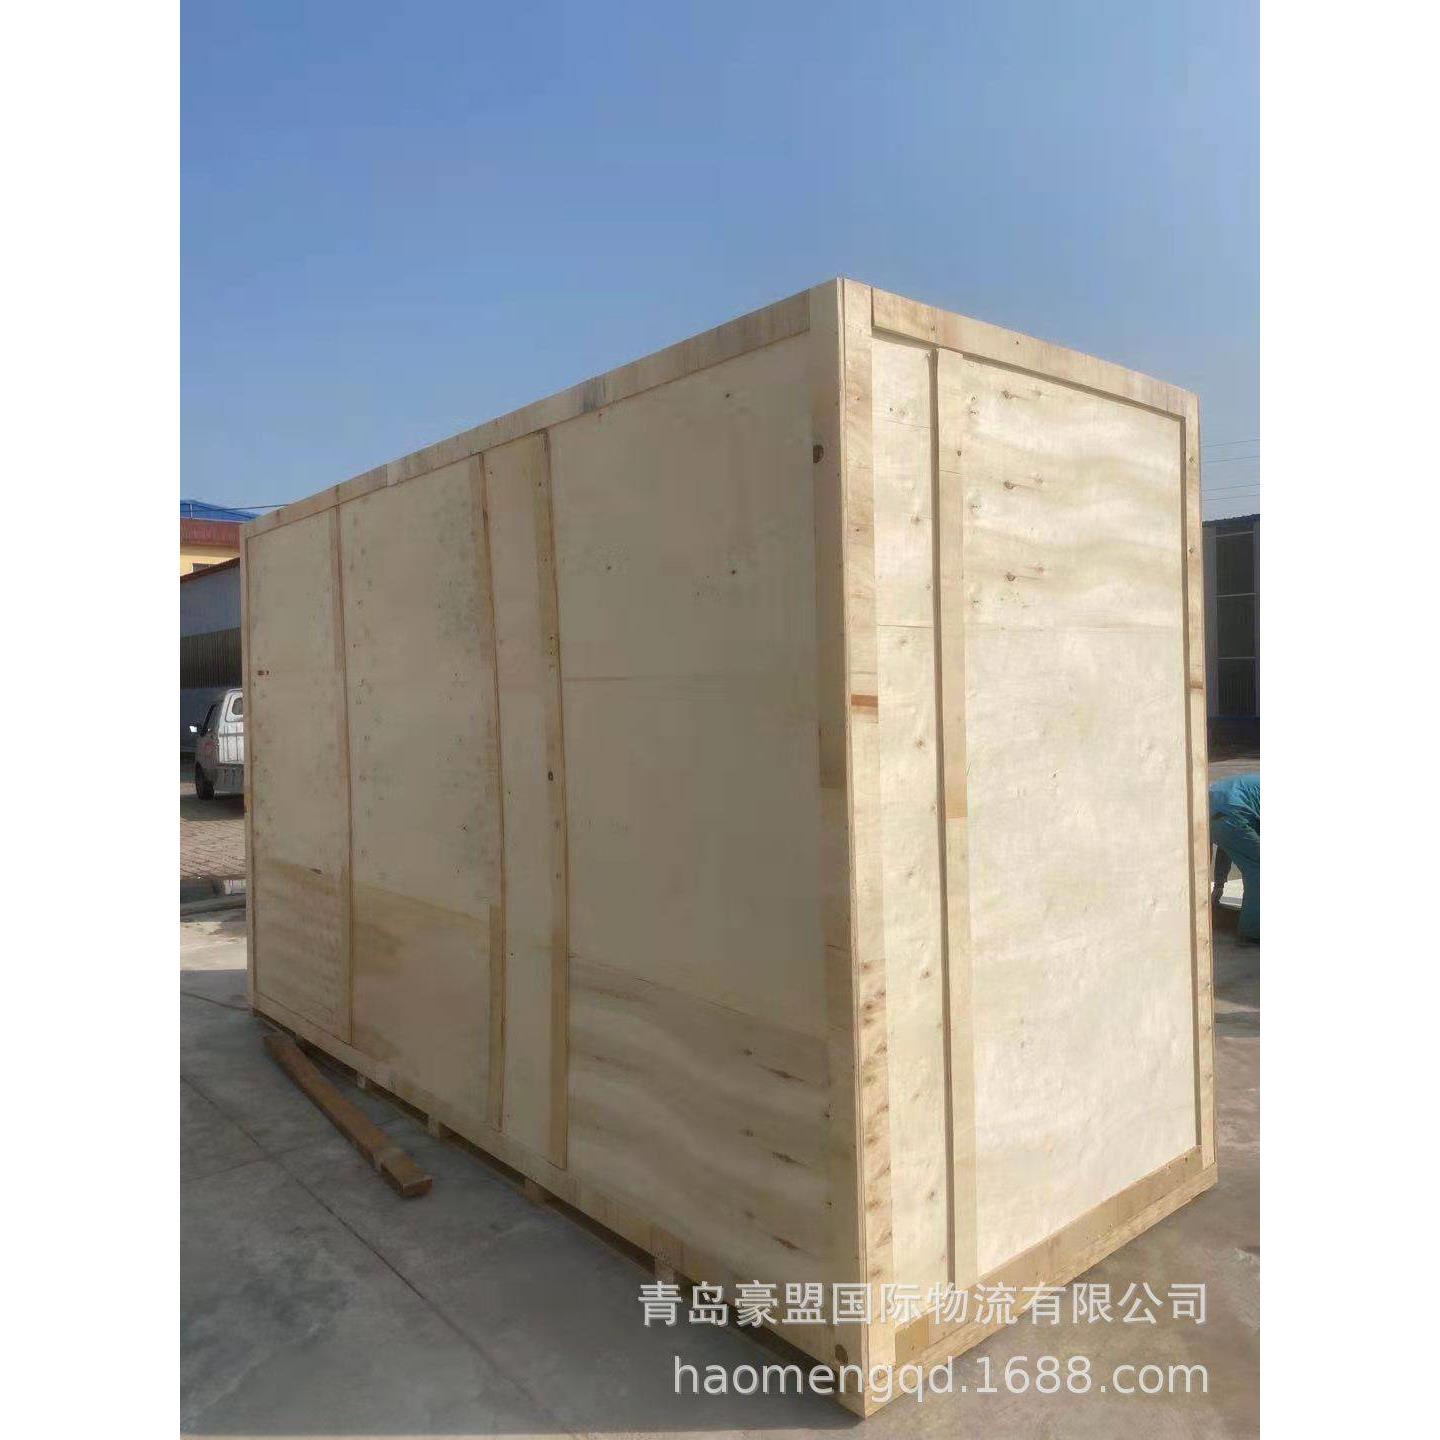 青岛开发区木箱厂 大型设备外包装来图制作免熏蒸出口包装箱出售